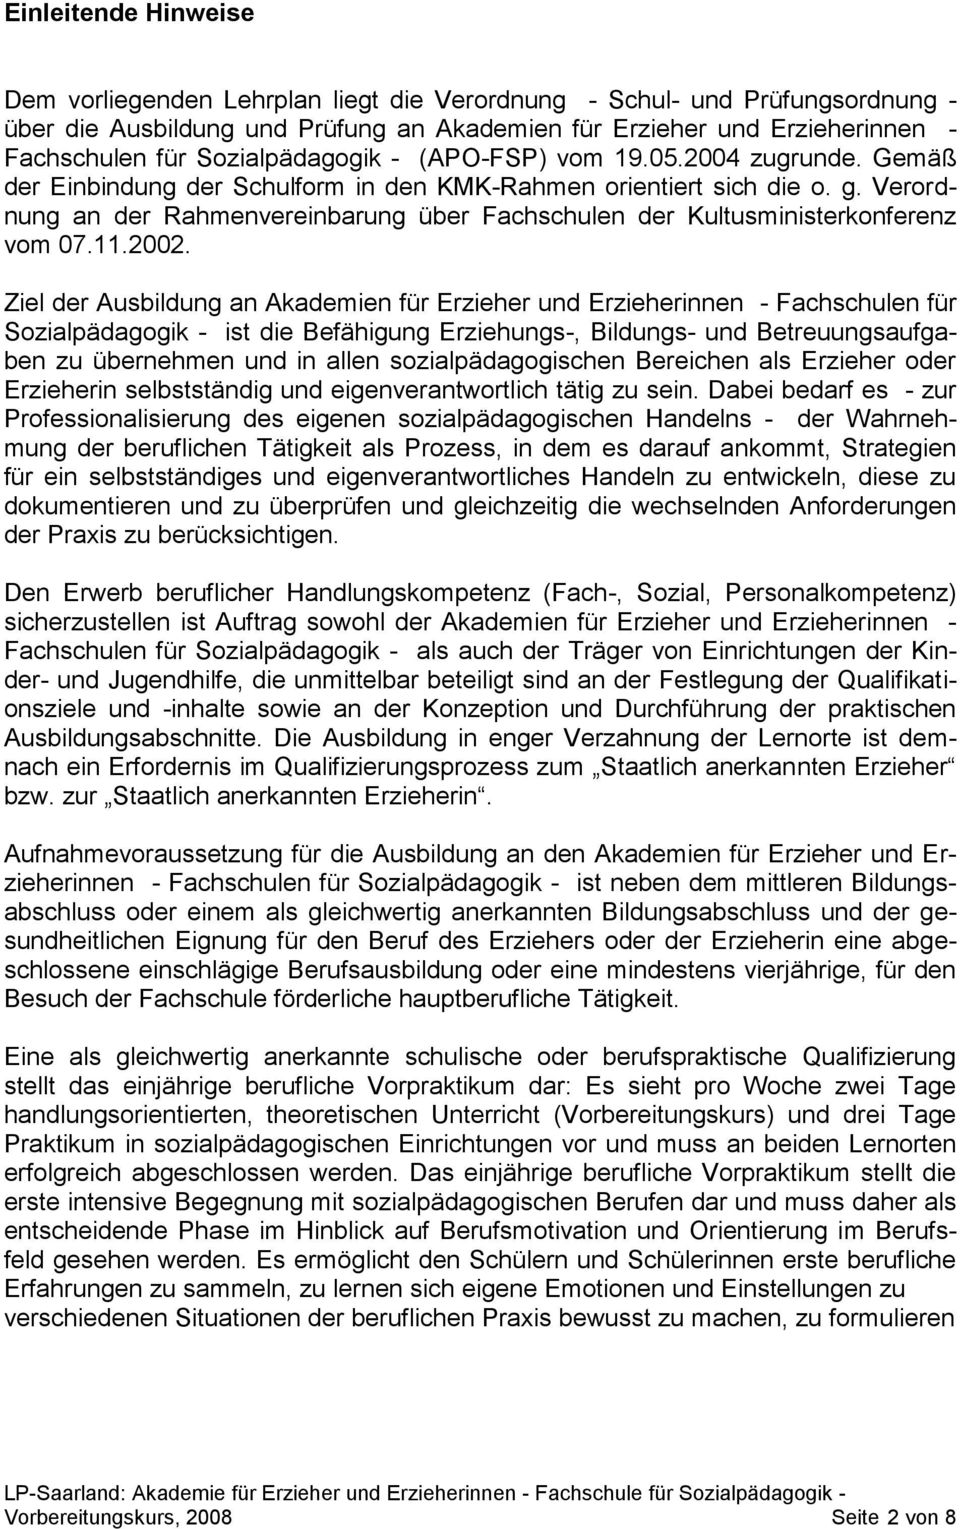 Verordnung an der Rahmenvereinbarung über Fachschulen der Kultusministerkonferenz vom 07.11.2002.